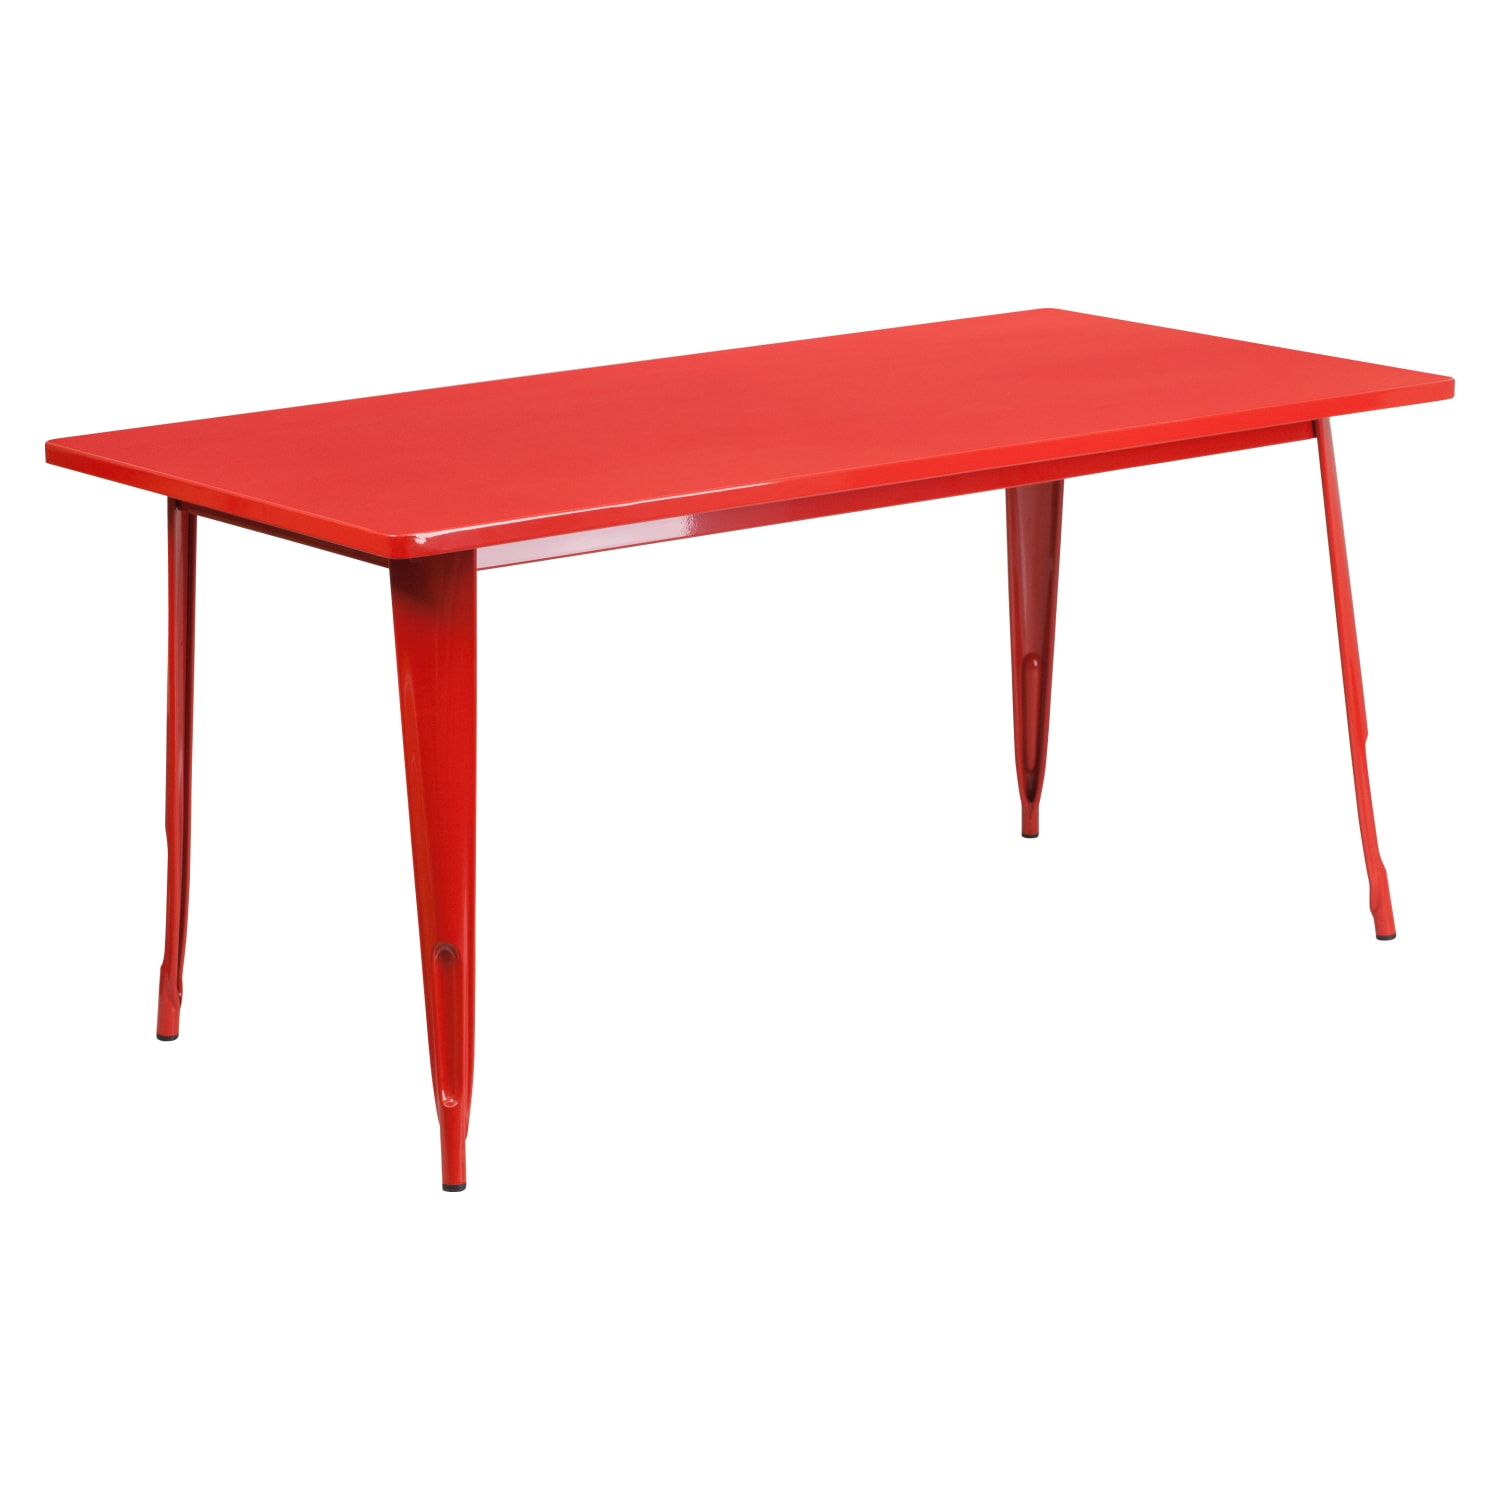 31.5” x 63” Rectangular Red Metal Indoor-Outdoor Table